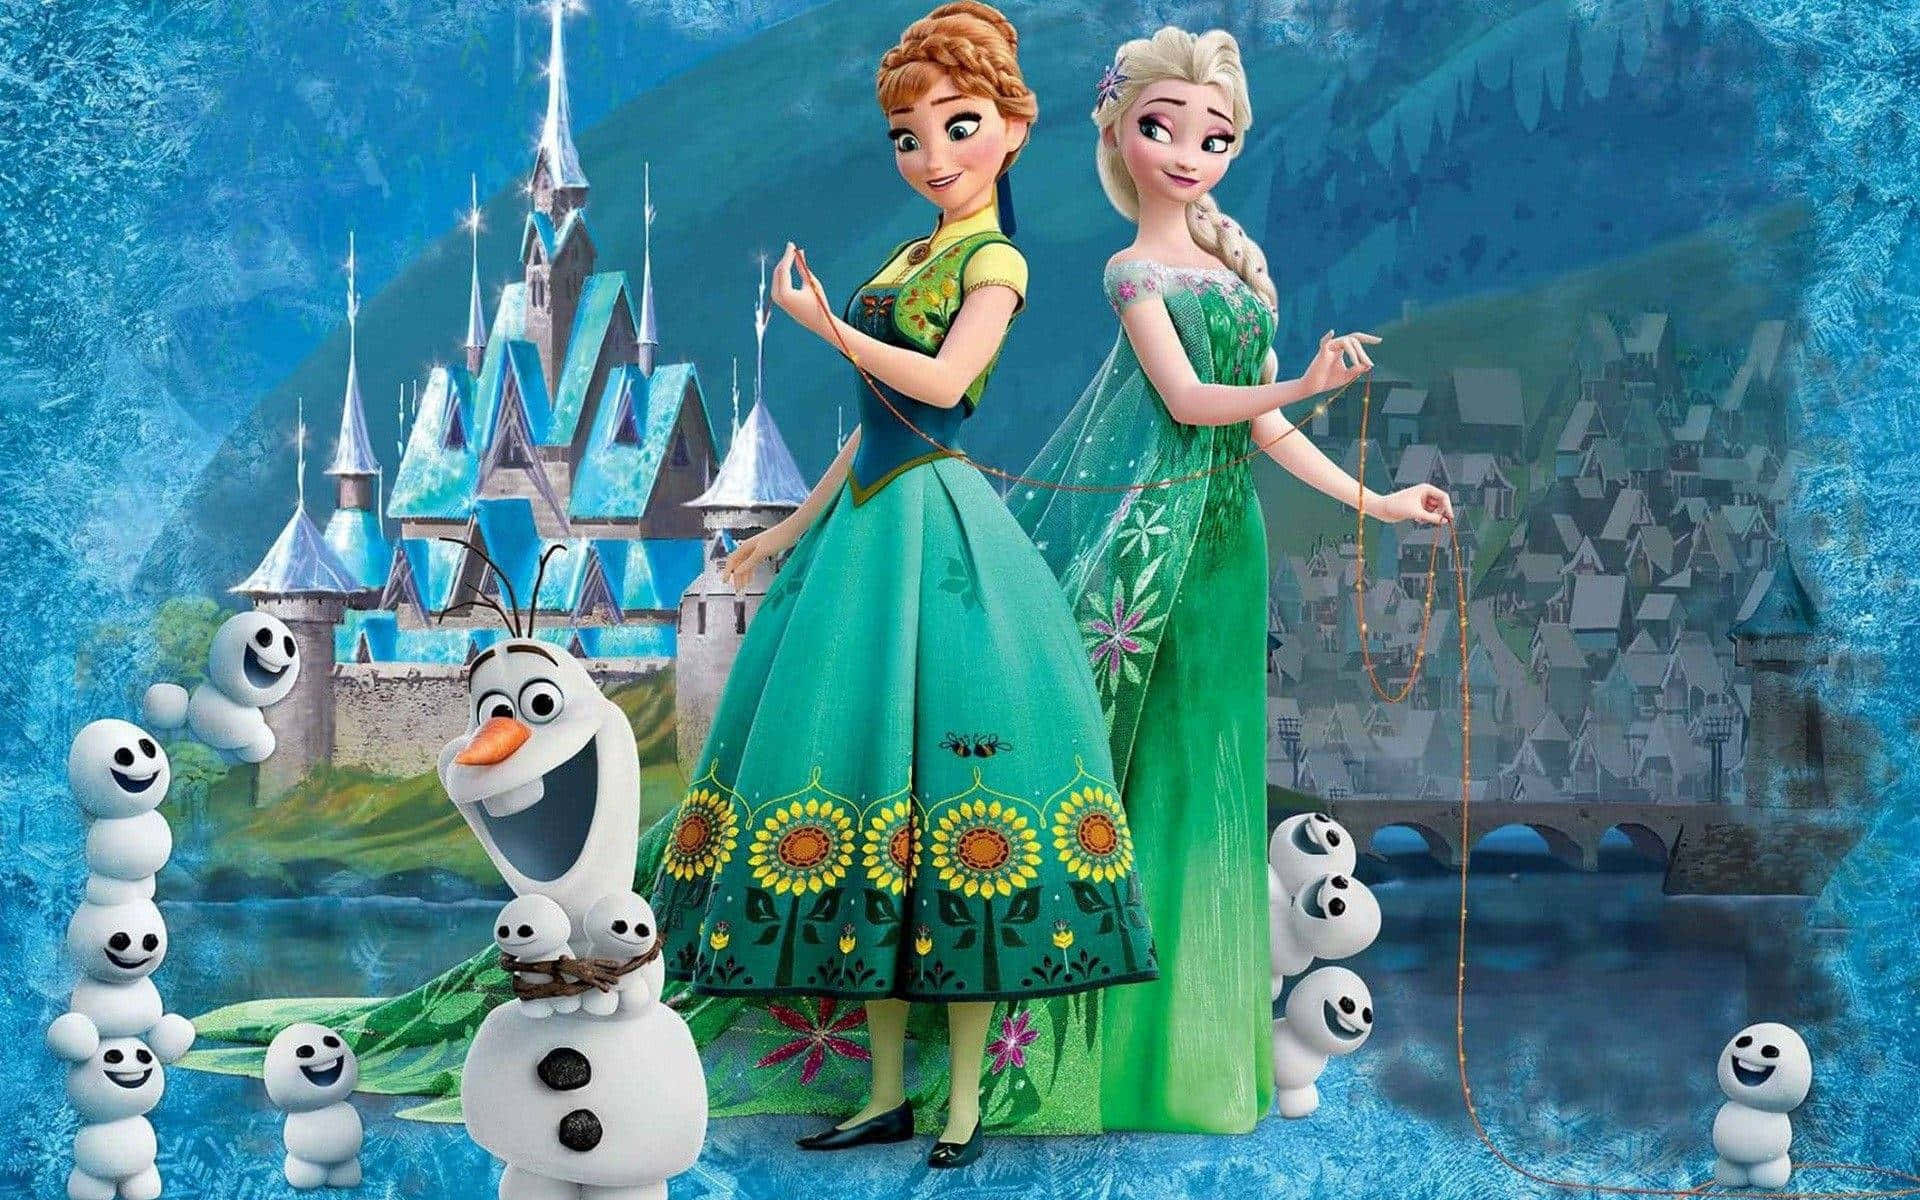 Billeder fra Frozen 2 dekorerer tapetet.